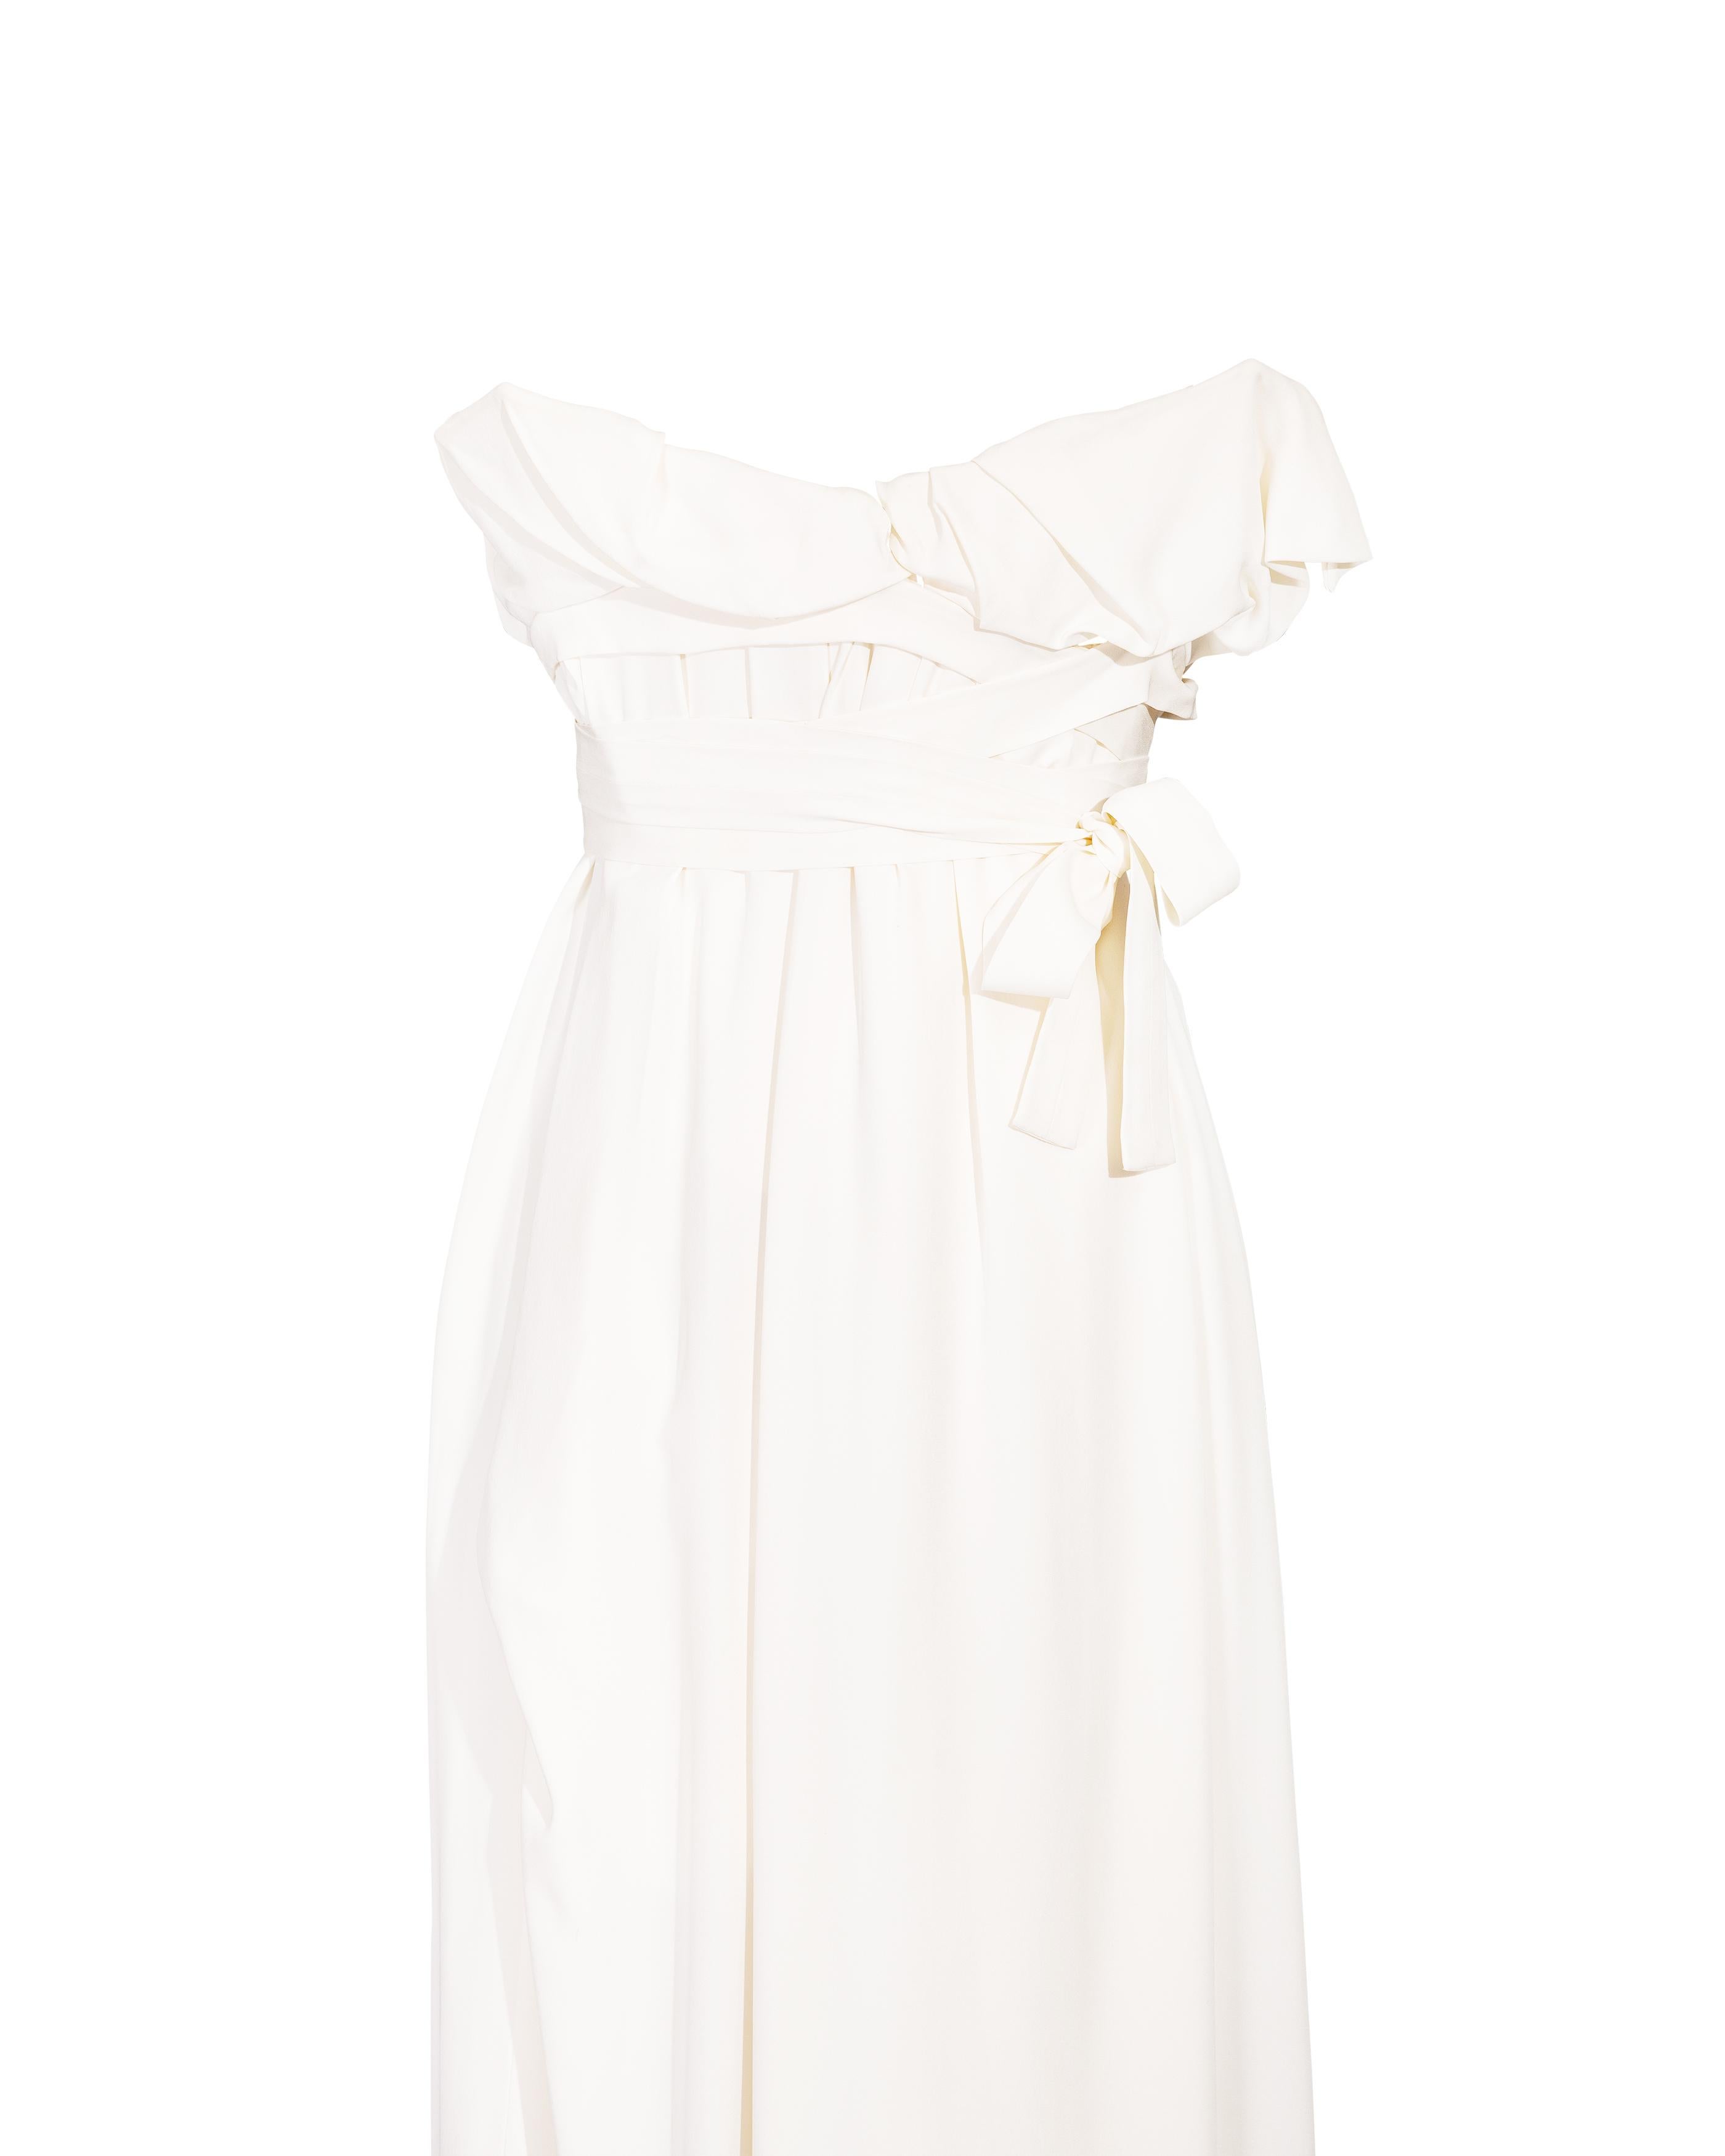 S/S 2014 Vivienne Westwood White Strapless Silk Drape Gown (robe drapée en soie sans bretelles) 2